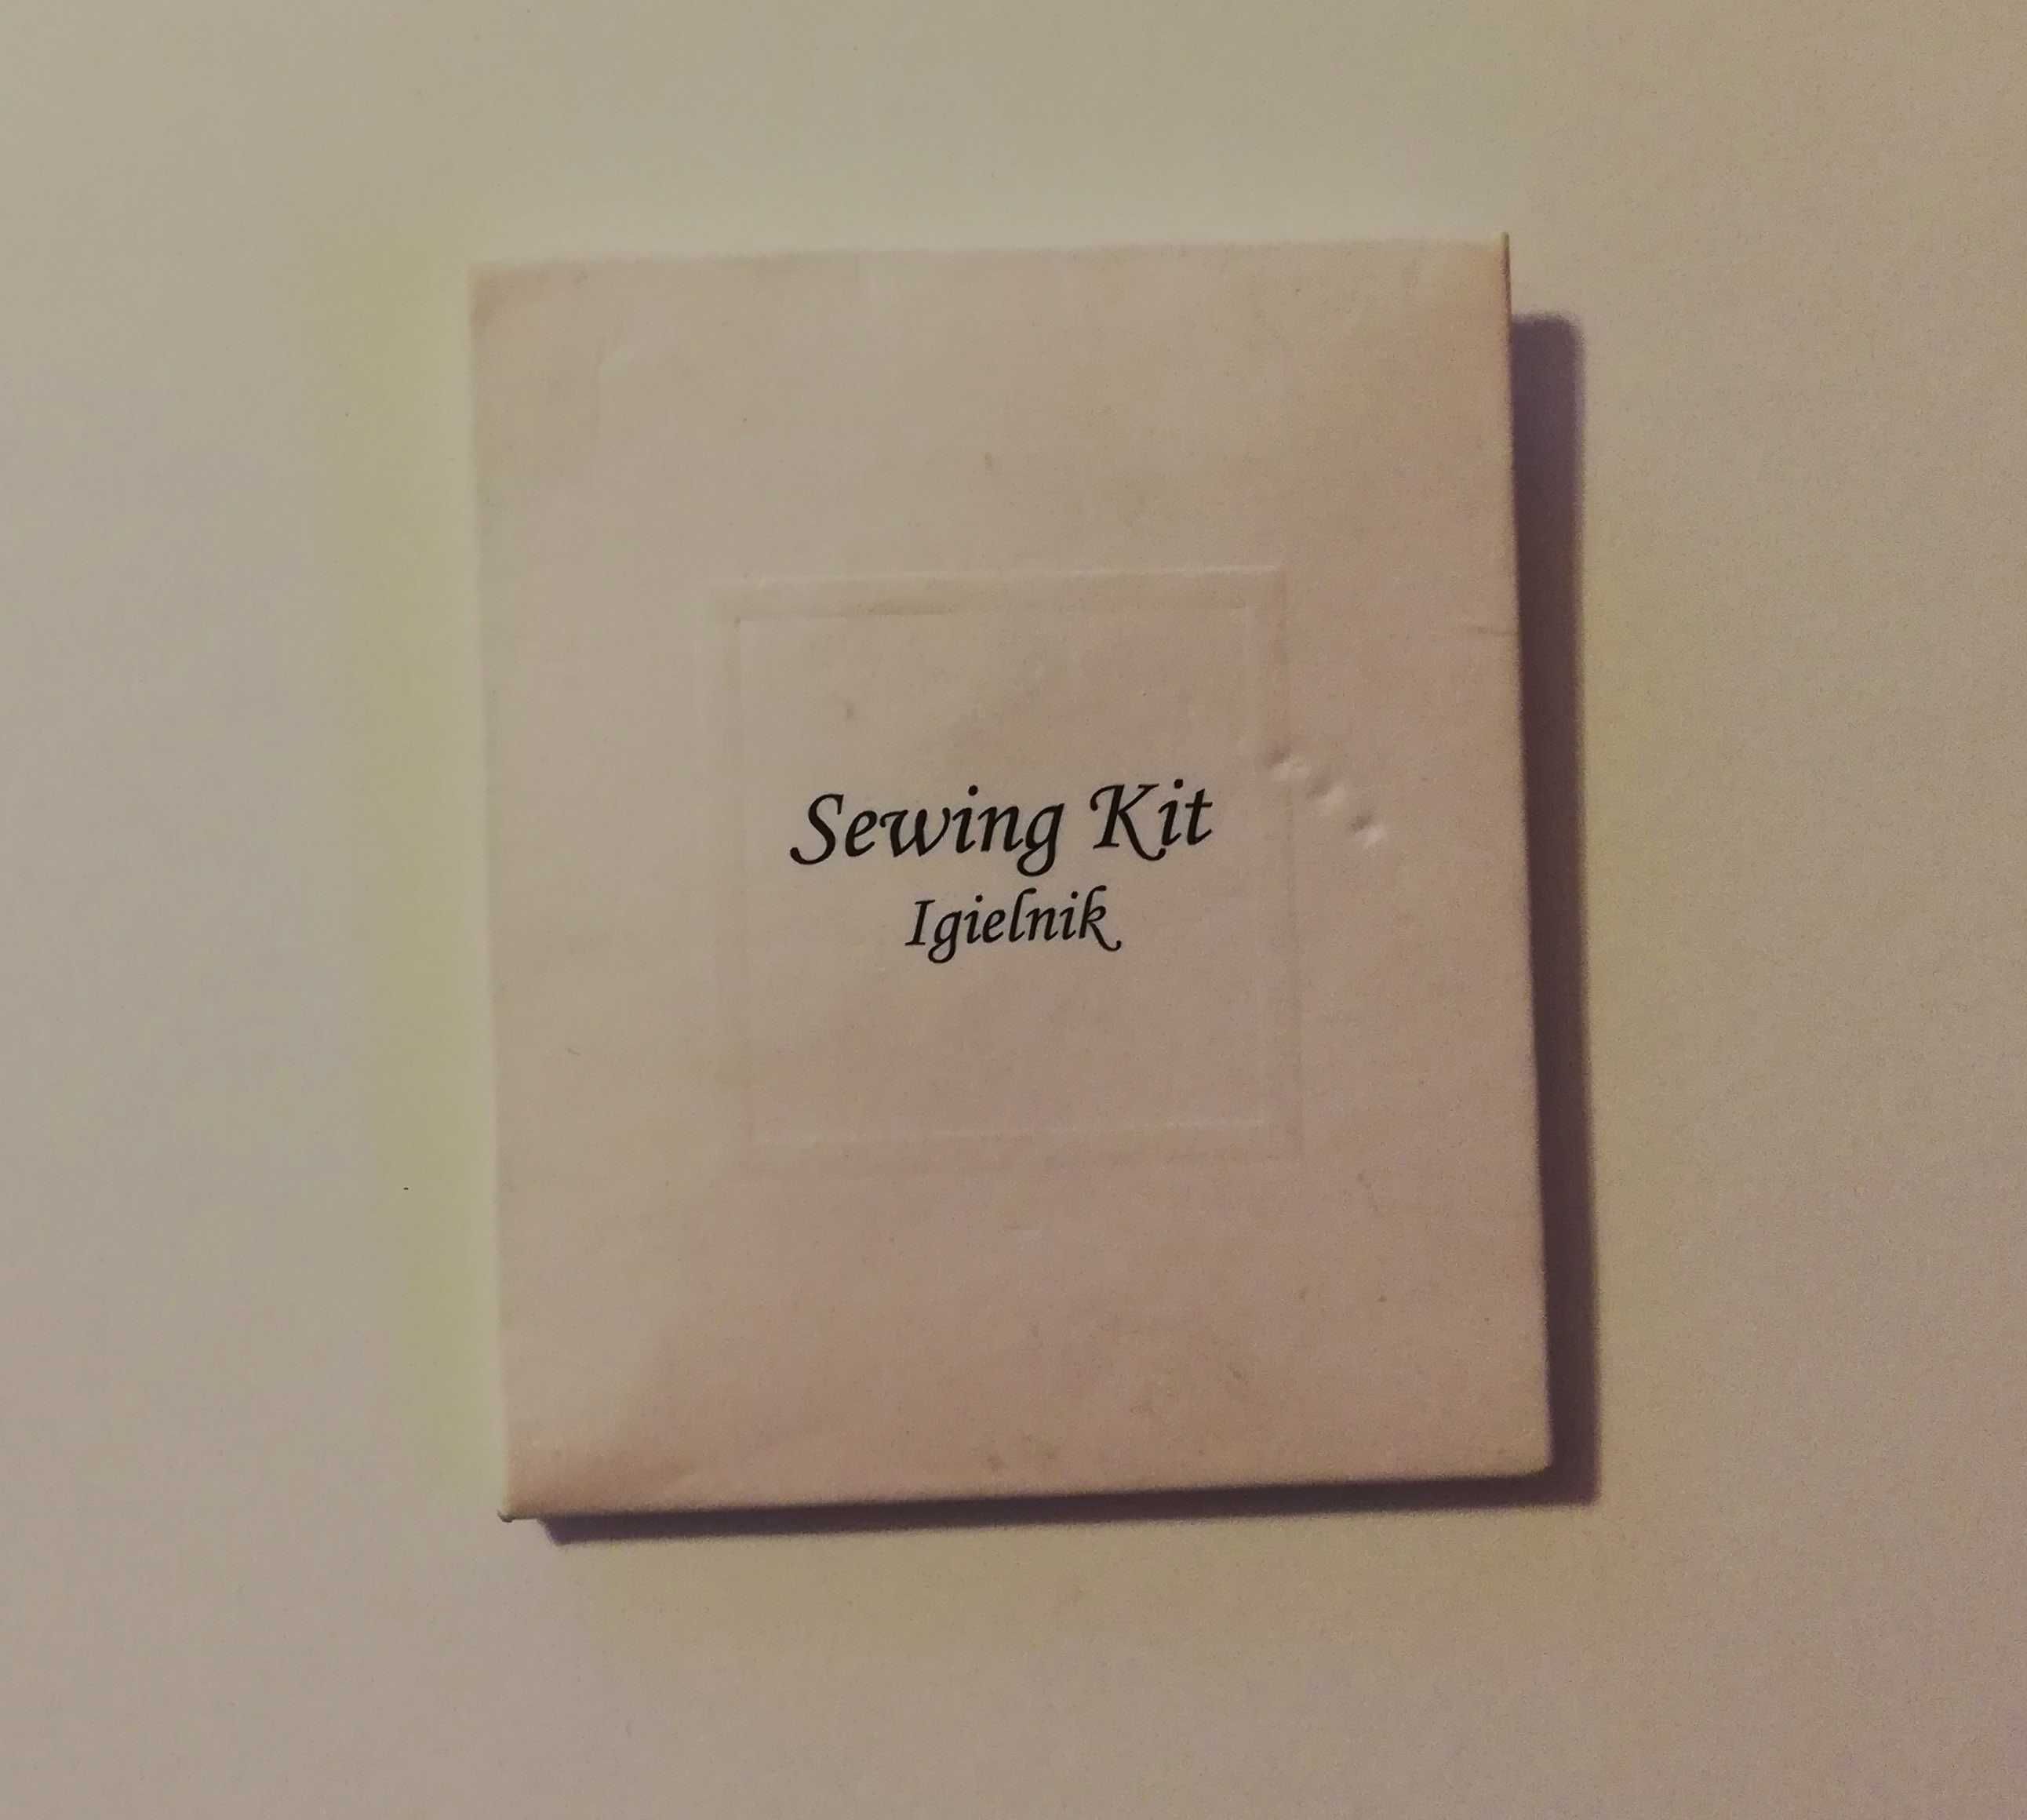 igielnik zapasowy podróżny hotelowy awaryjny Sewing Kit zestaw szycia